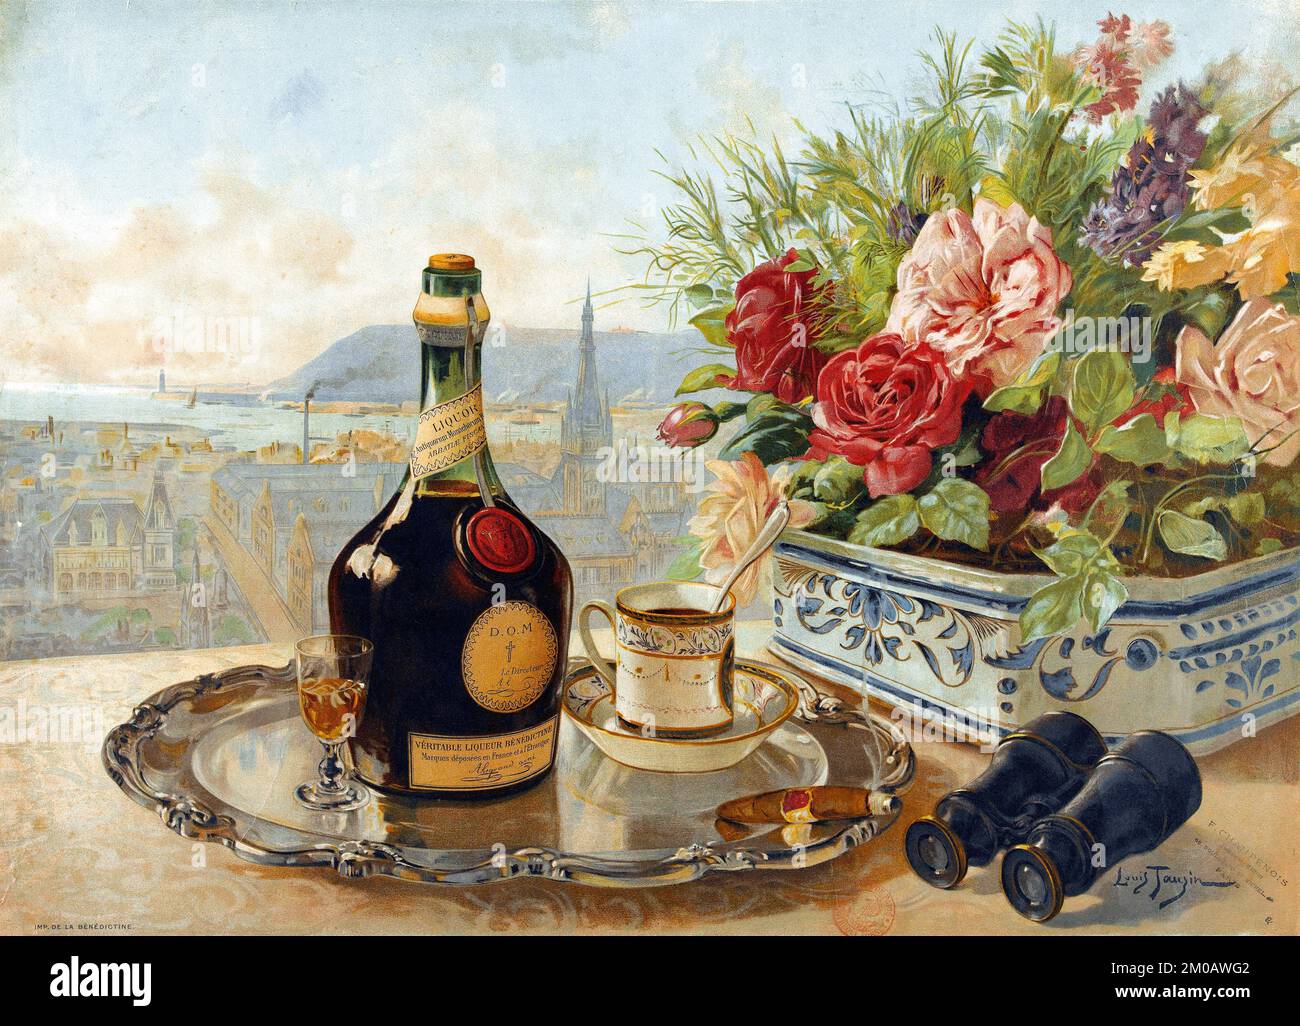 Auténtico licor benedictino. Marcas registradas en Francia y en el extranjero - póster antiguo de publicidad de alcohol por Louis Tauzin c 1901 Foto de stock